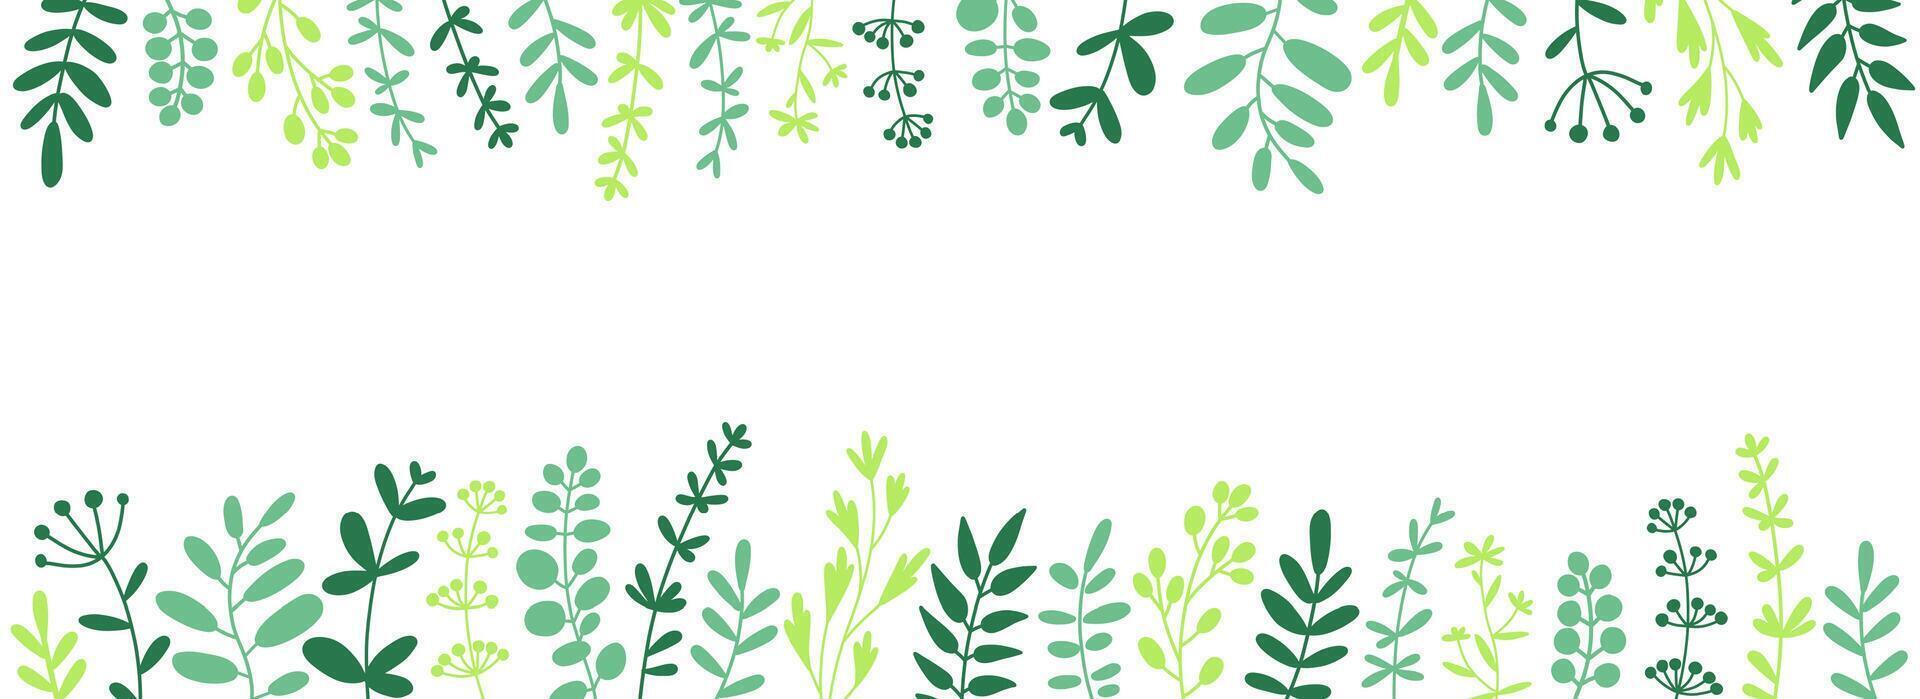 hierbas, leña menuda y hojas. herbario borde, horizontal parte superior y fondo ribetes. vector